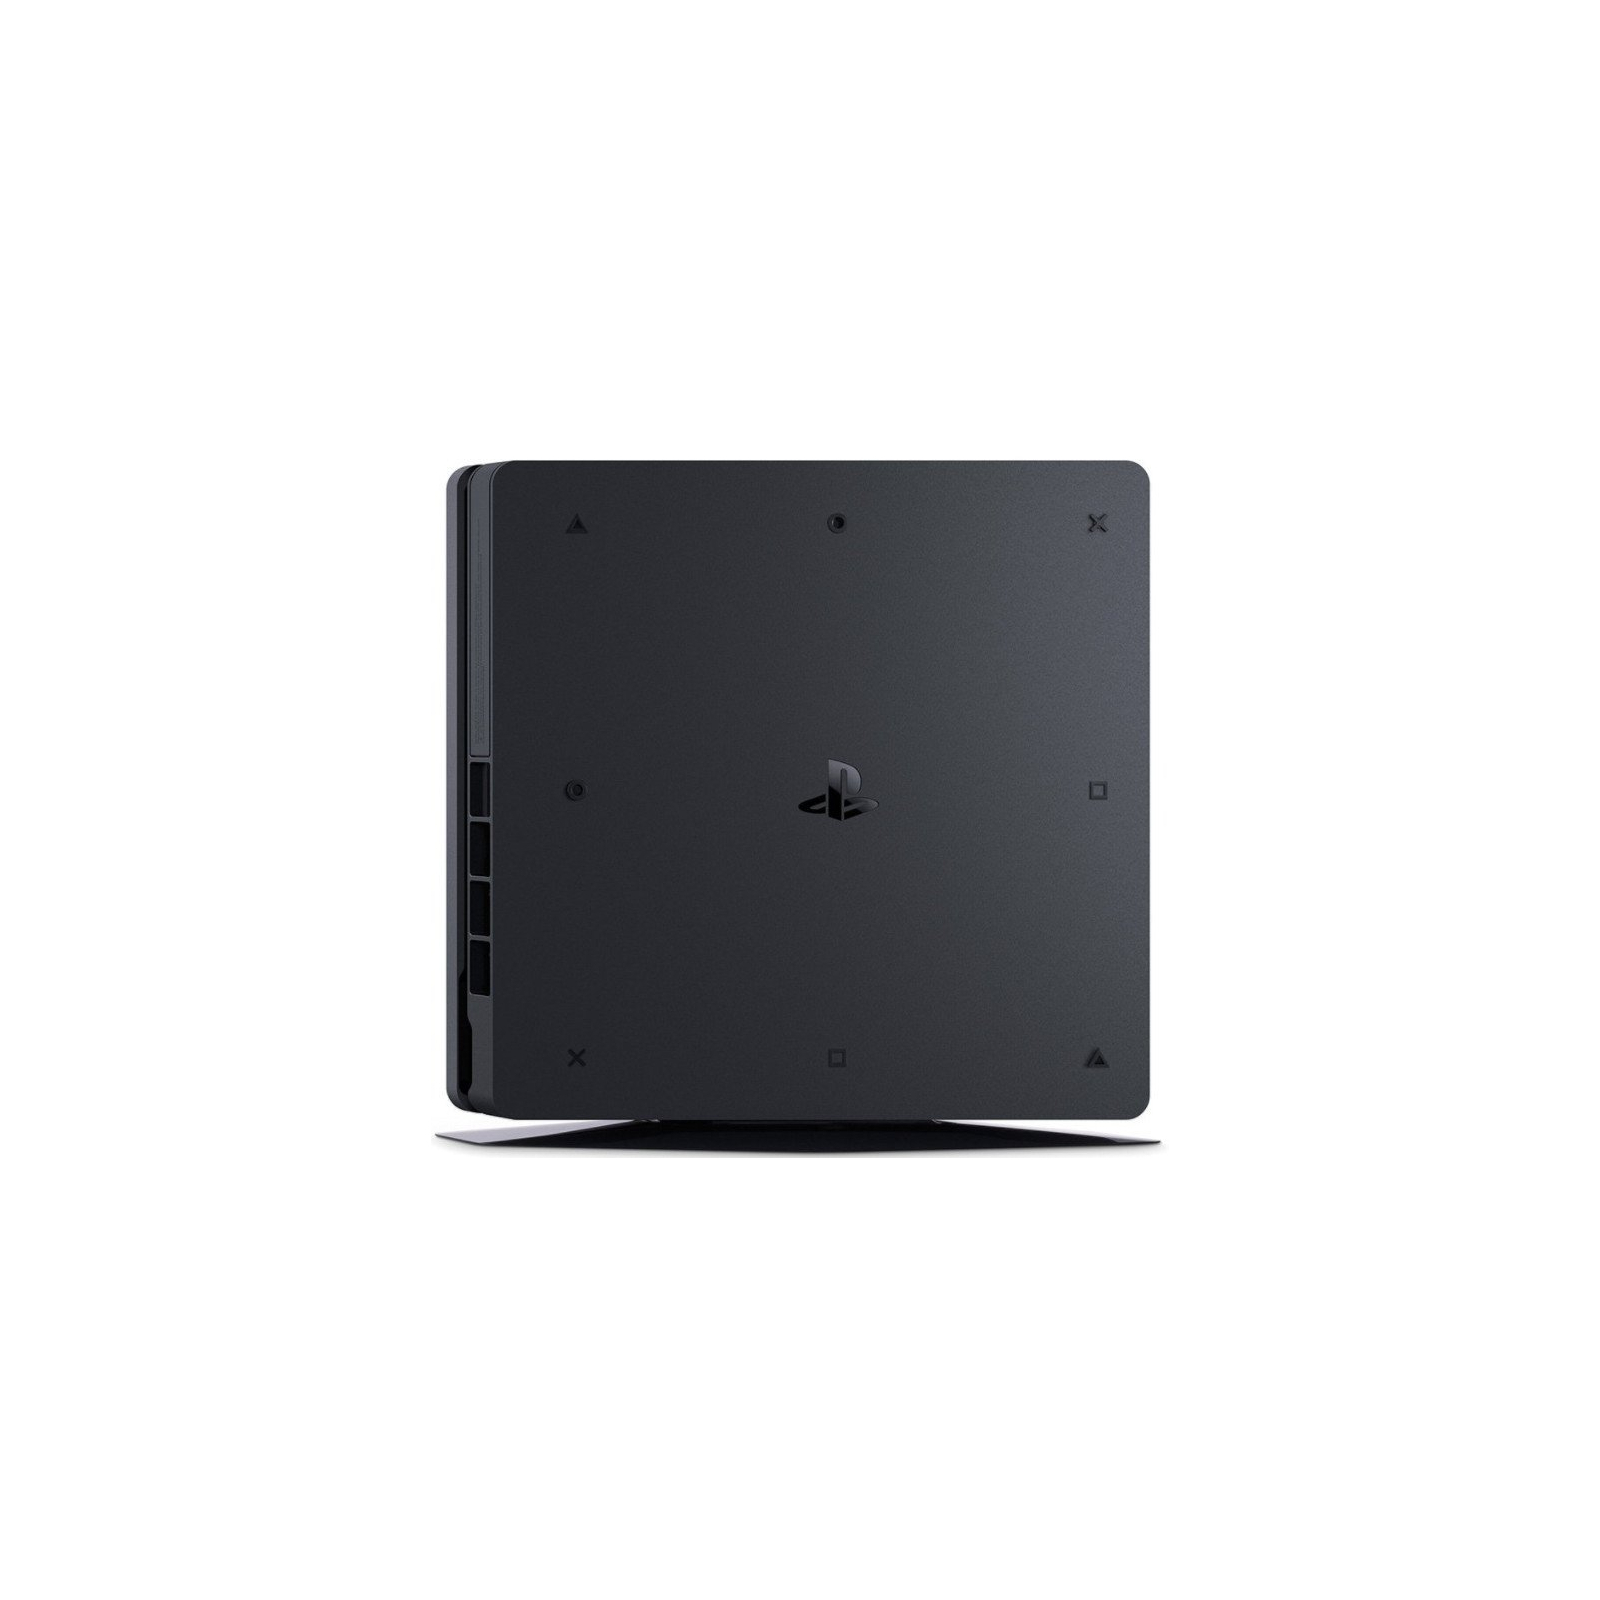 Игровая консоль Sony PlayStation 4 Slim 1Tb Black (Gran Turismo) (9907367) изображение 3